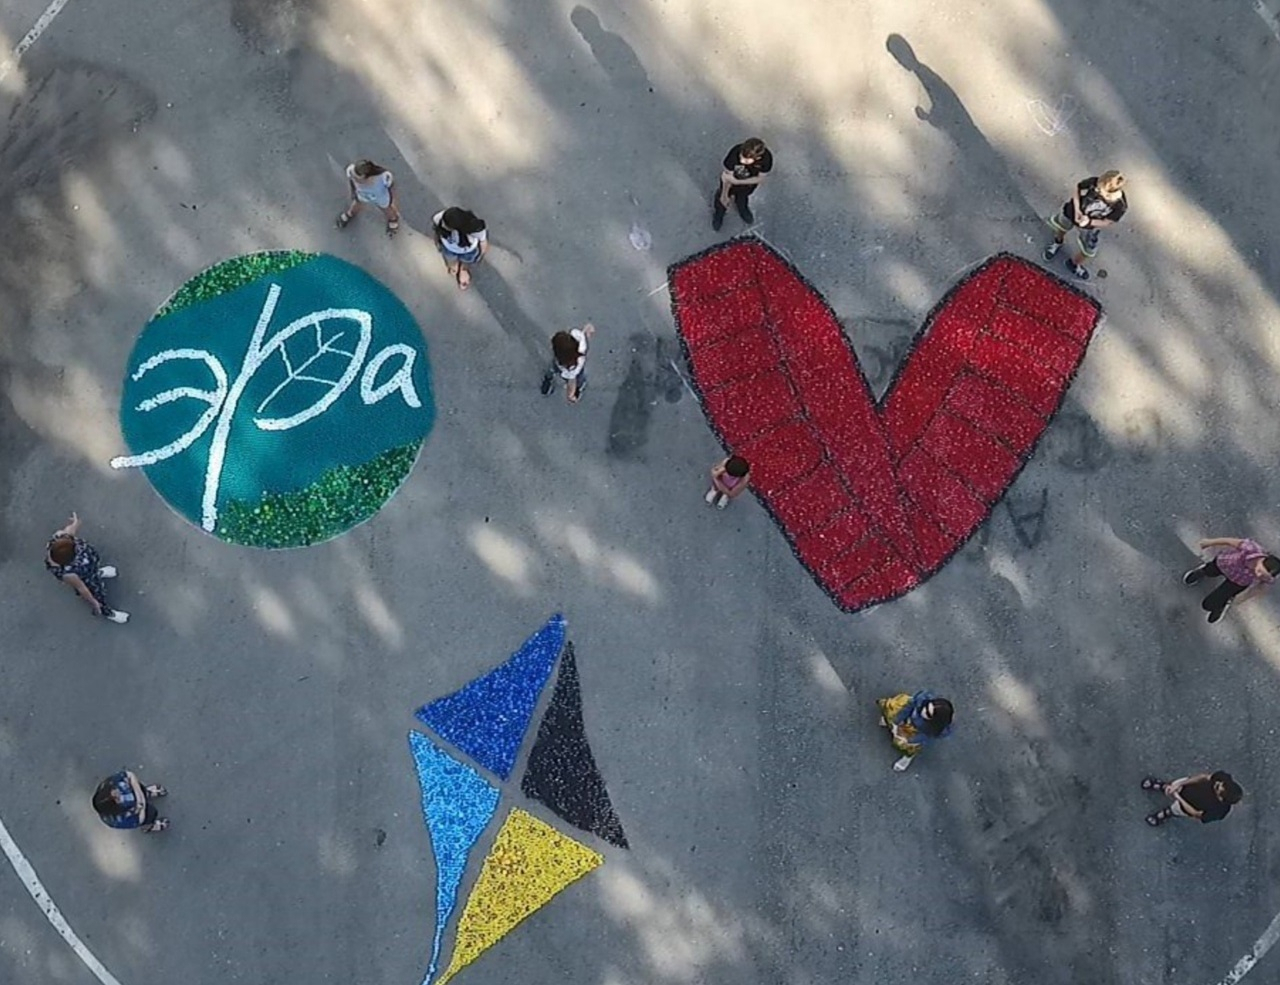 Благотворительная акция: "Эра" организует сбор пластиковых крышек для помощи детям